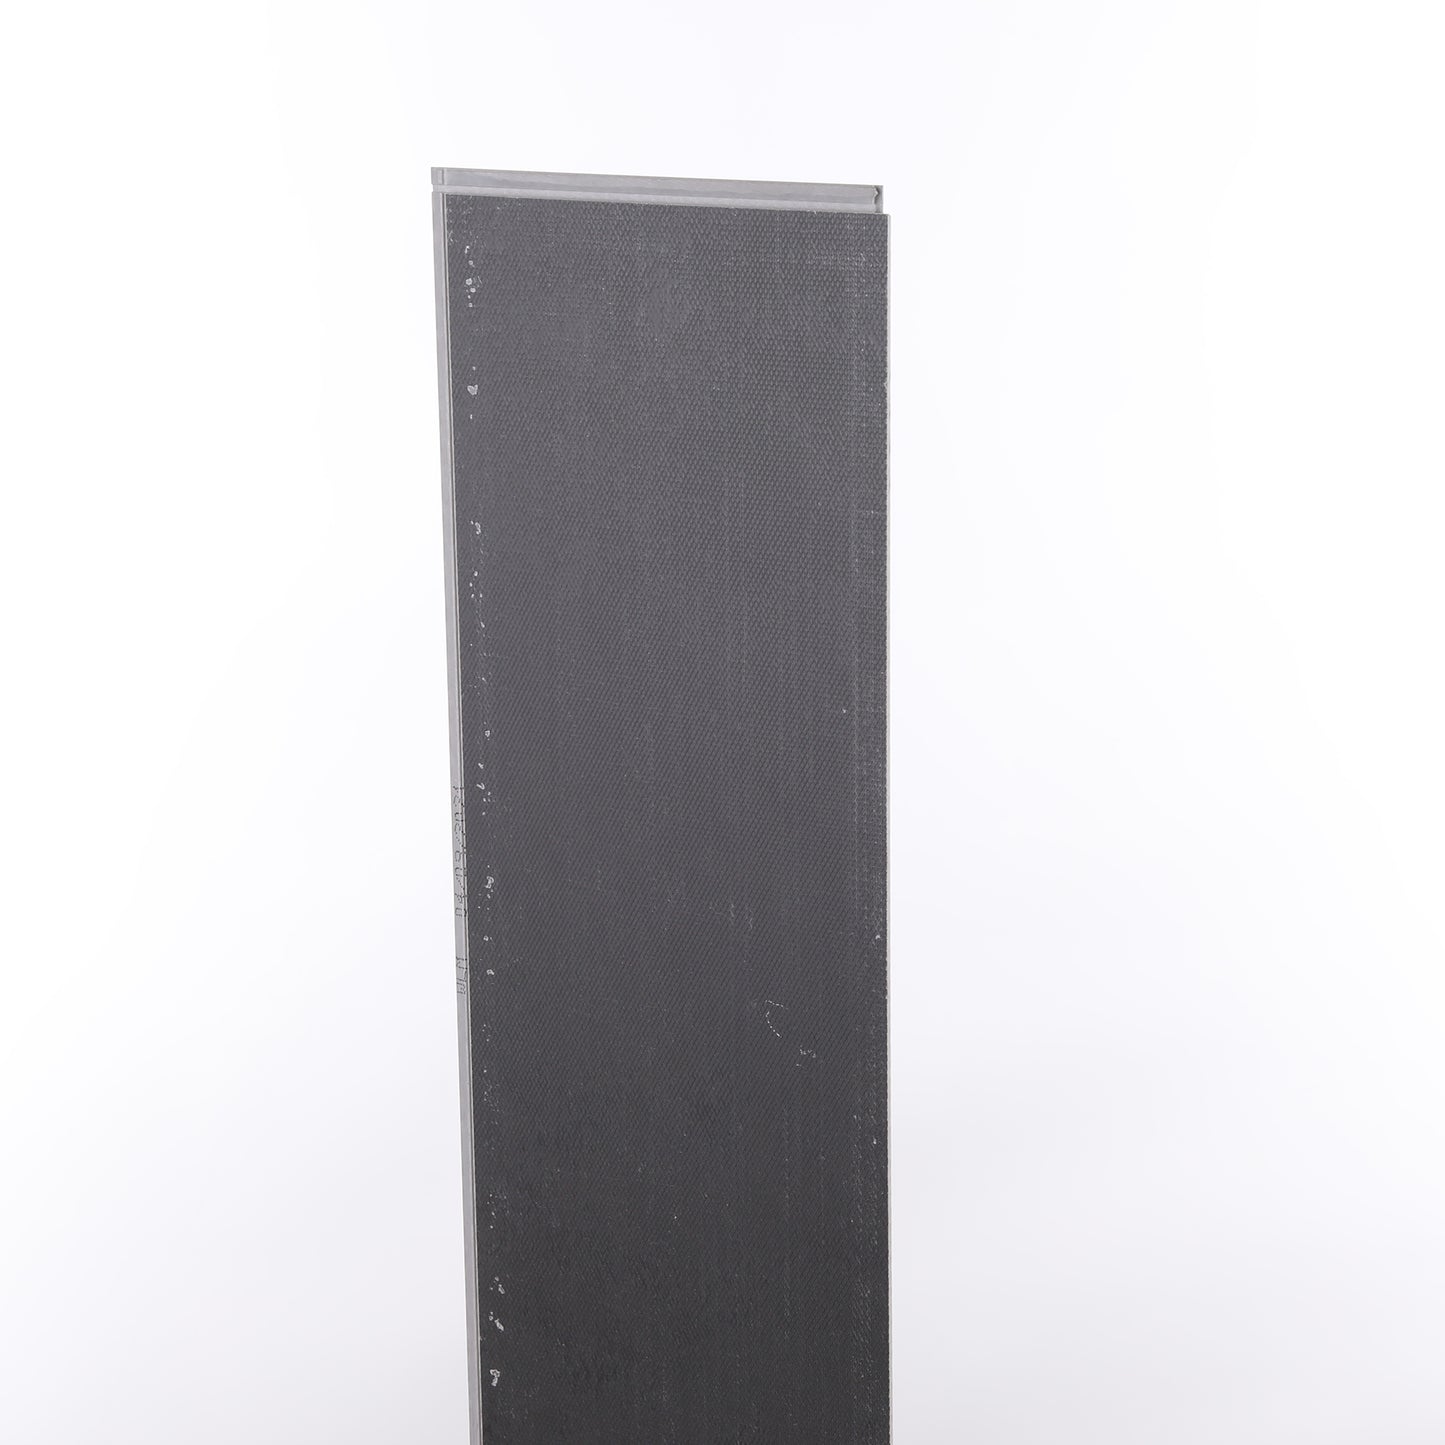 4mm Winchester Oak HDPC® Waterproof Luxury Vinyl Plank Flooring 9.13 in. Wide x 48 in. Long